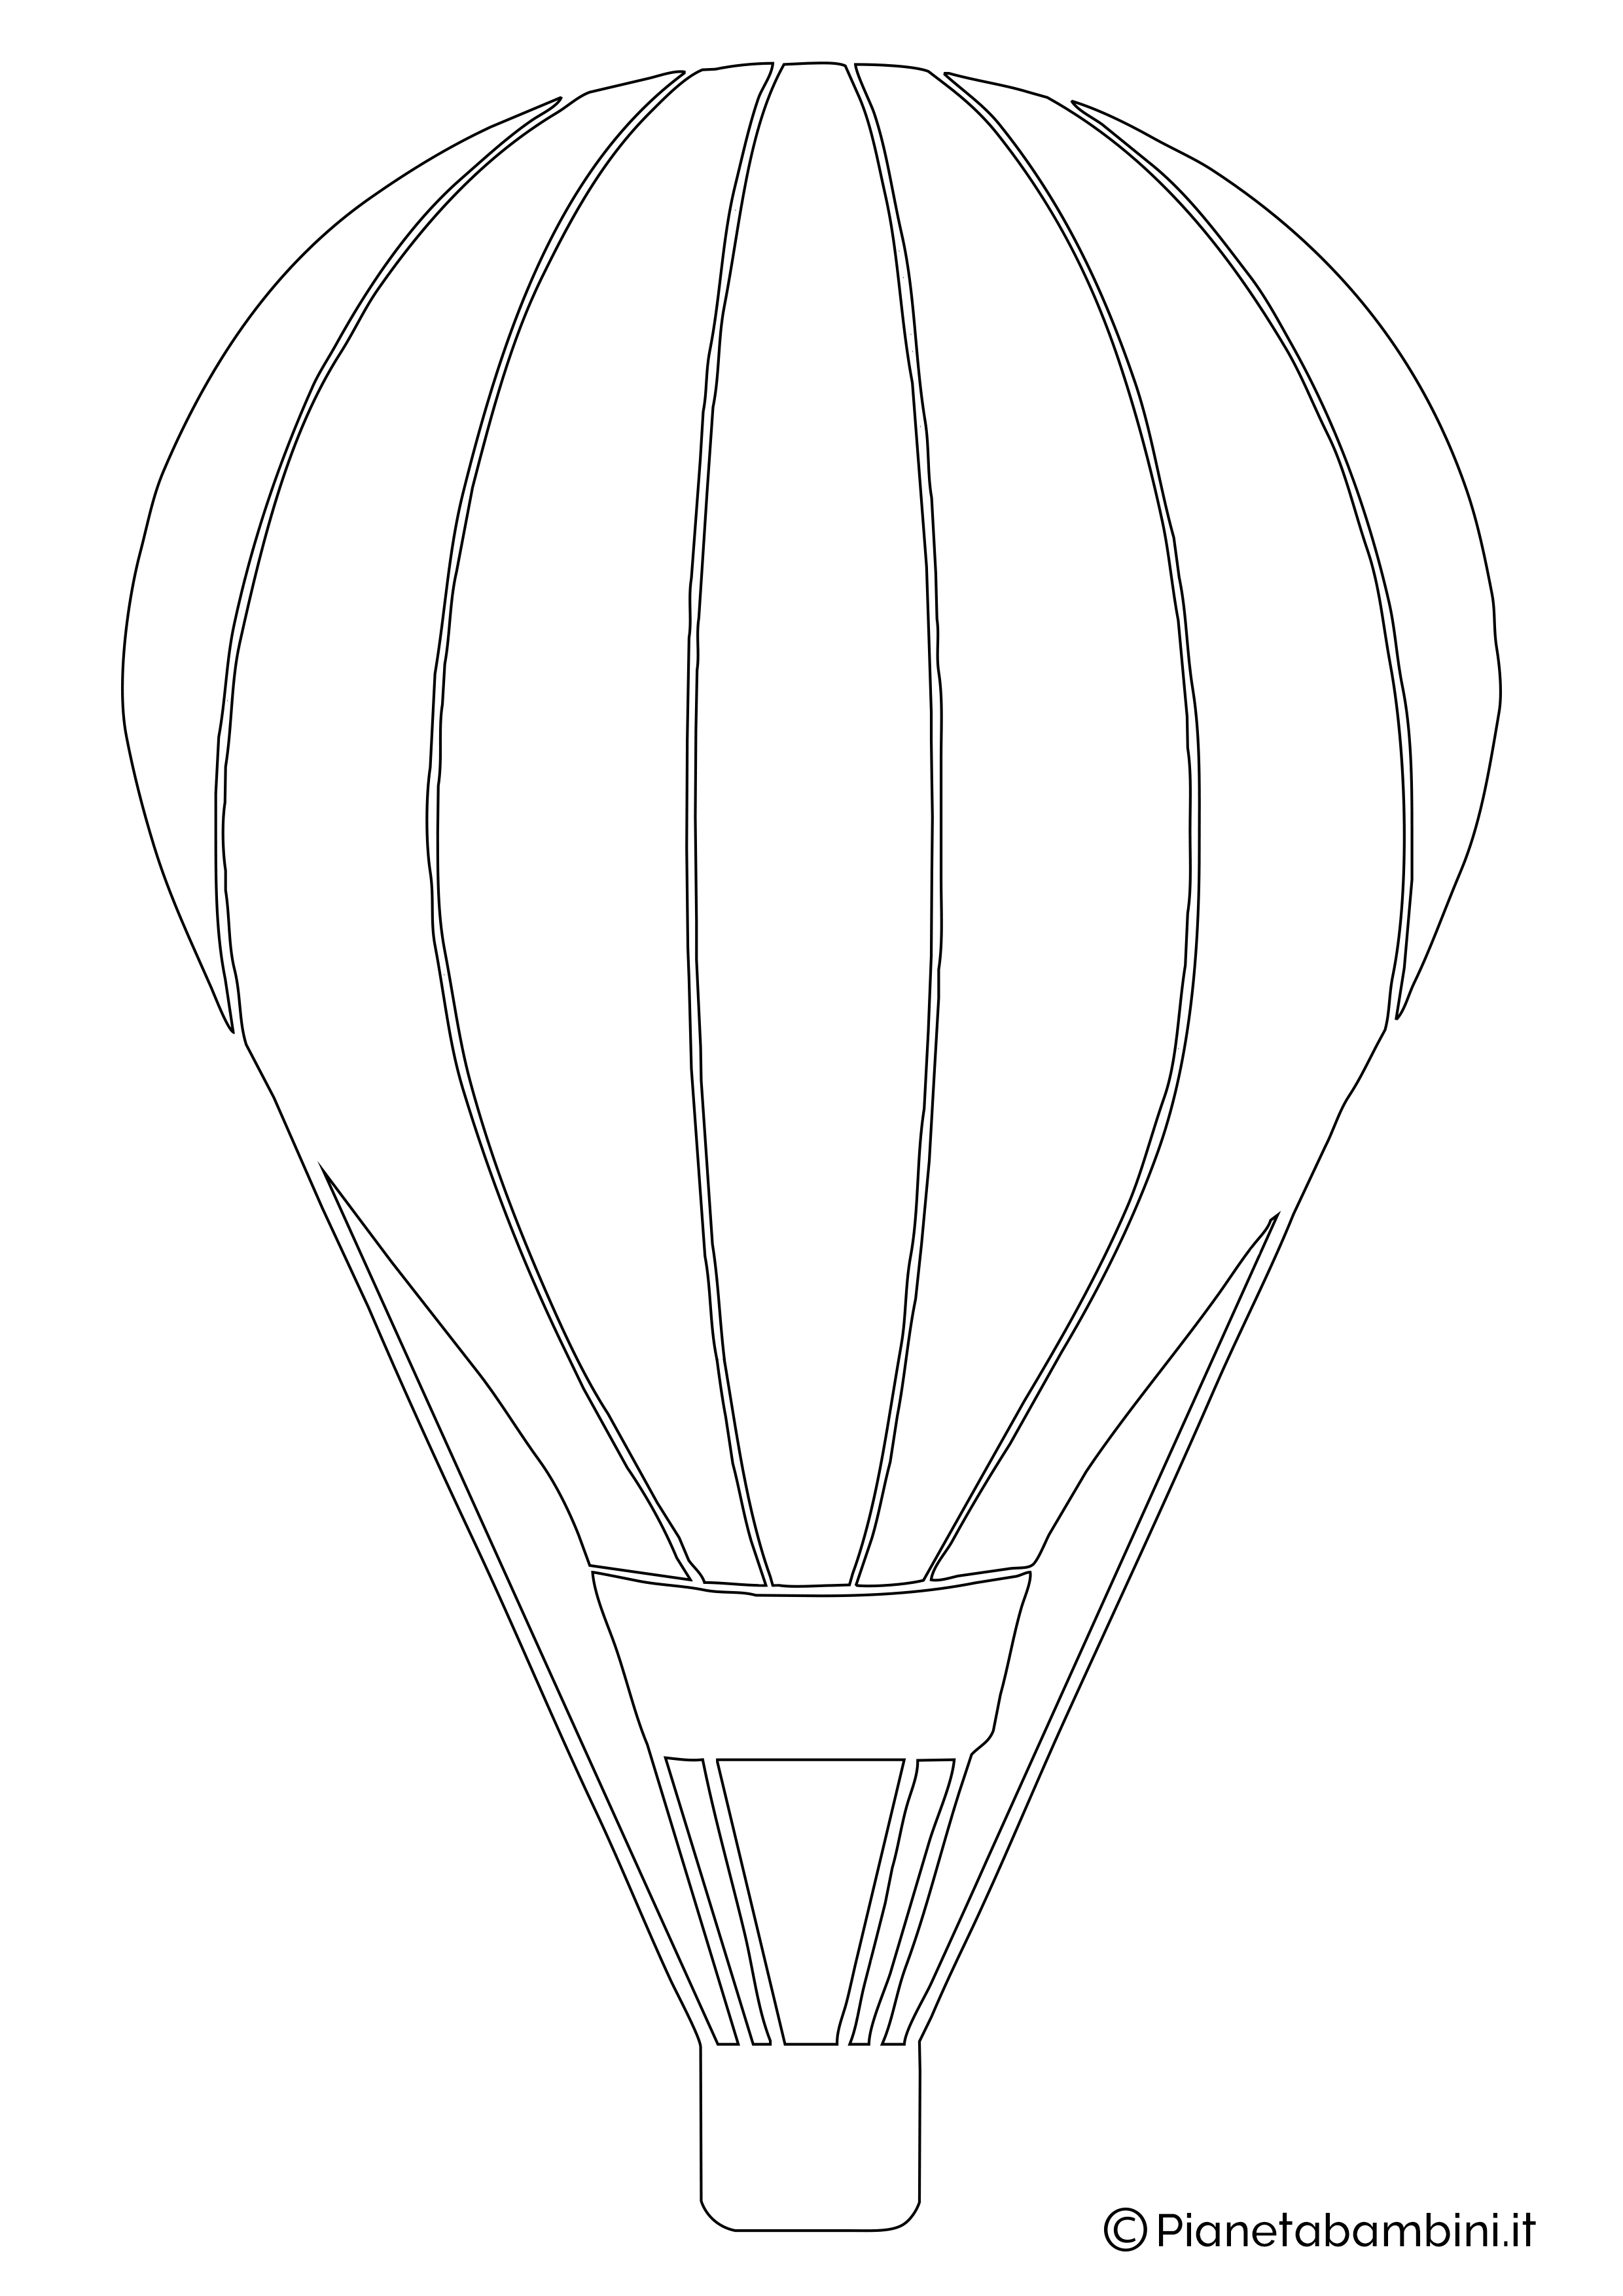 Рисуем воздушный шар с корзиной